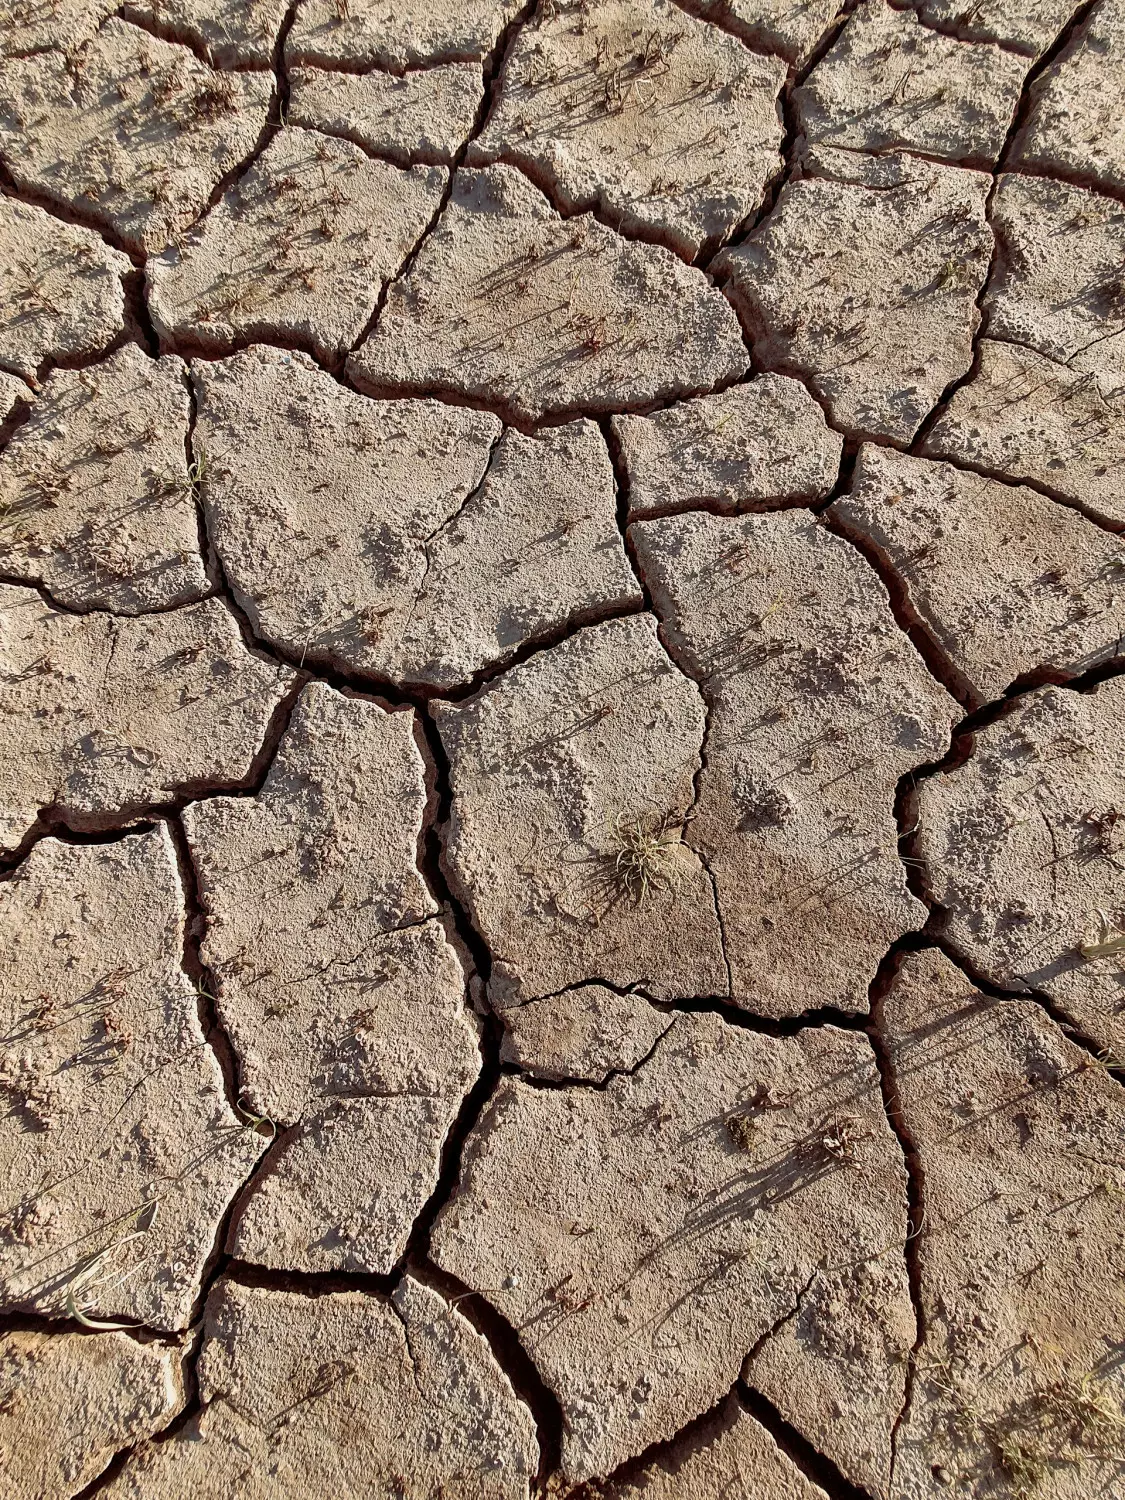 Dry spell: как выбраться из засухи в сексуальной жизни?